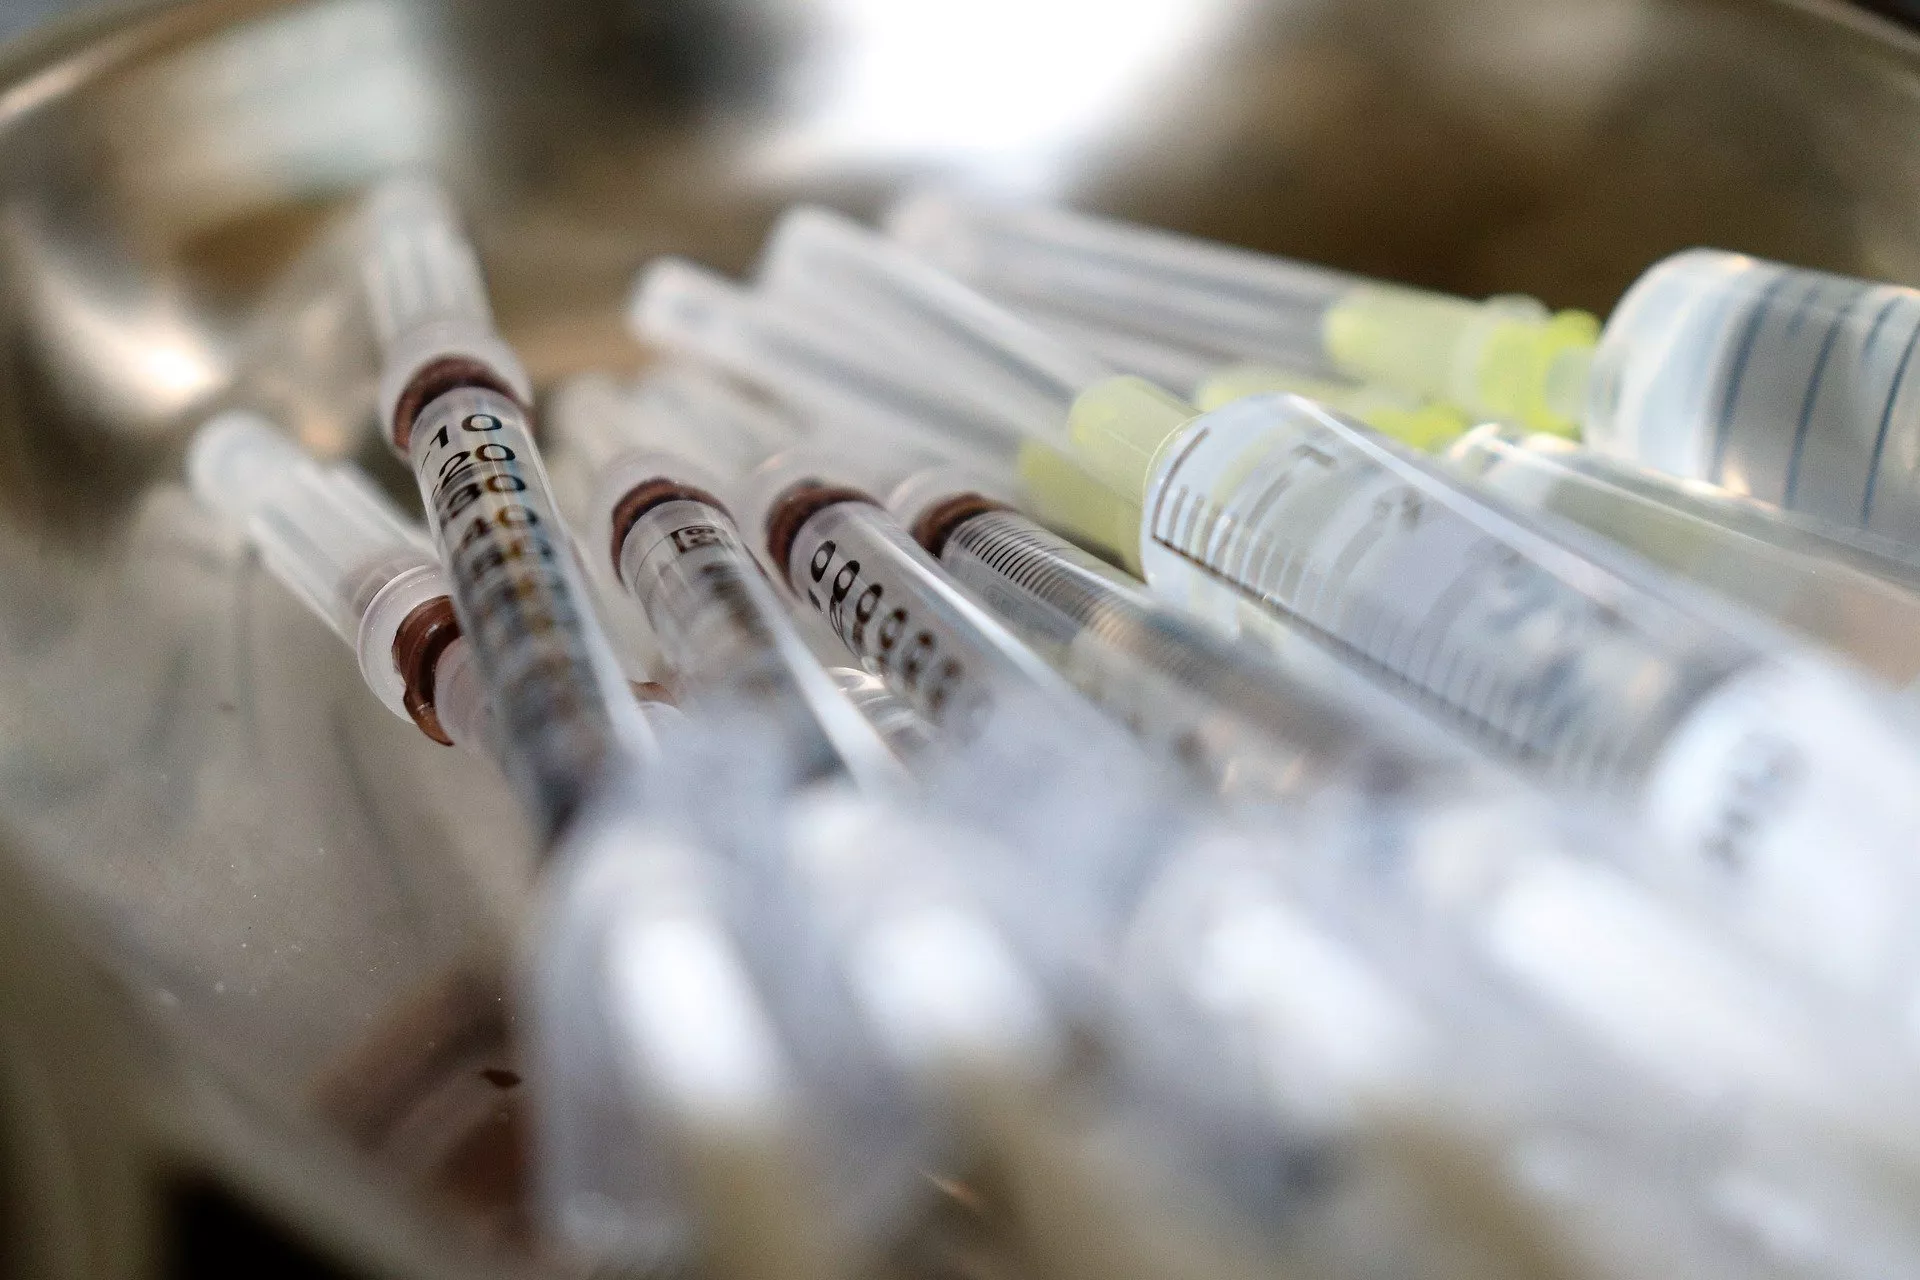 CCOO señala que las jeringuillas de 0,1 facilitaría la sexta dosis de la vacuna